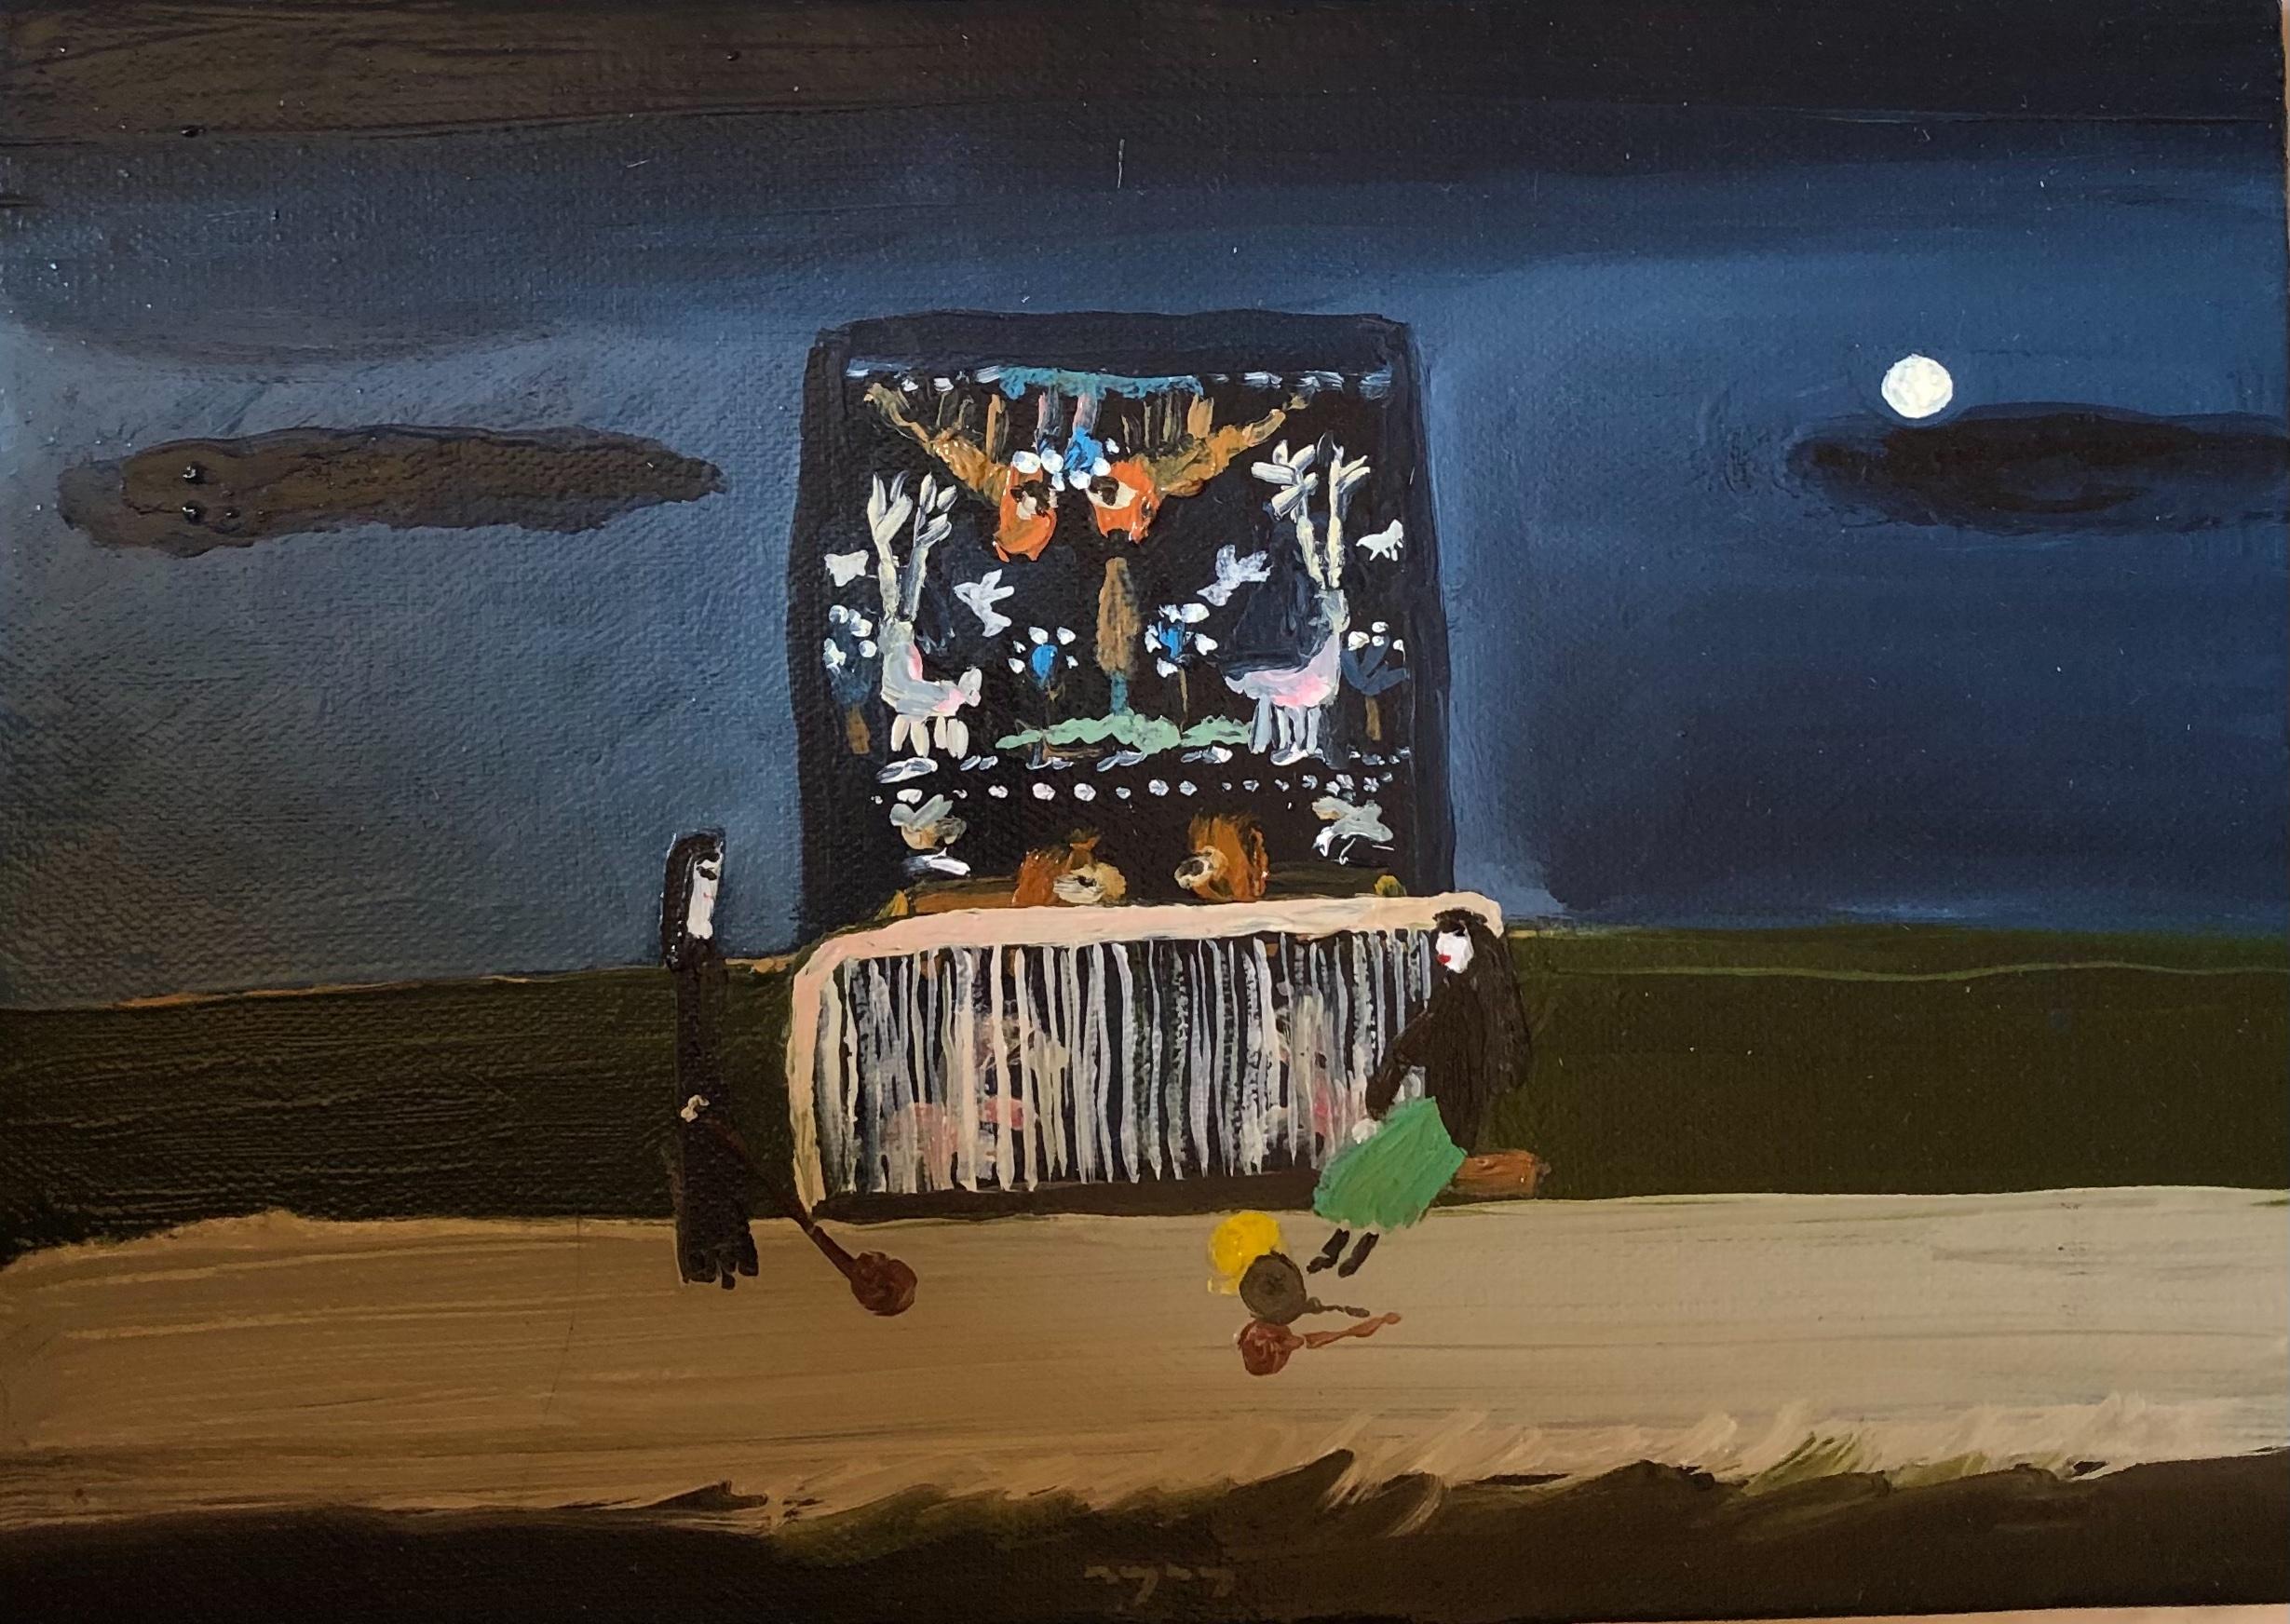 Huile sur toile 

Tutu Kiladze est un artiste géorgien né en 1981 qui vit et travaille en Géorgie. Elle est diplômée en 2005 de l'Académie nationale des arts de Tbilissi, en Géorgie. Elle a participé à de nombreuses foires d'art et expositions dans